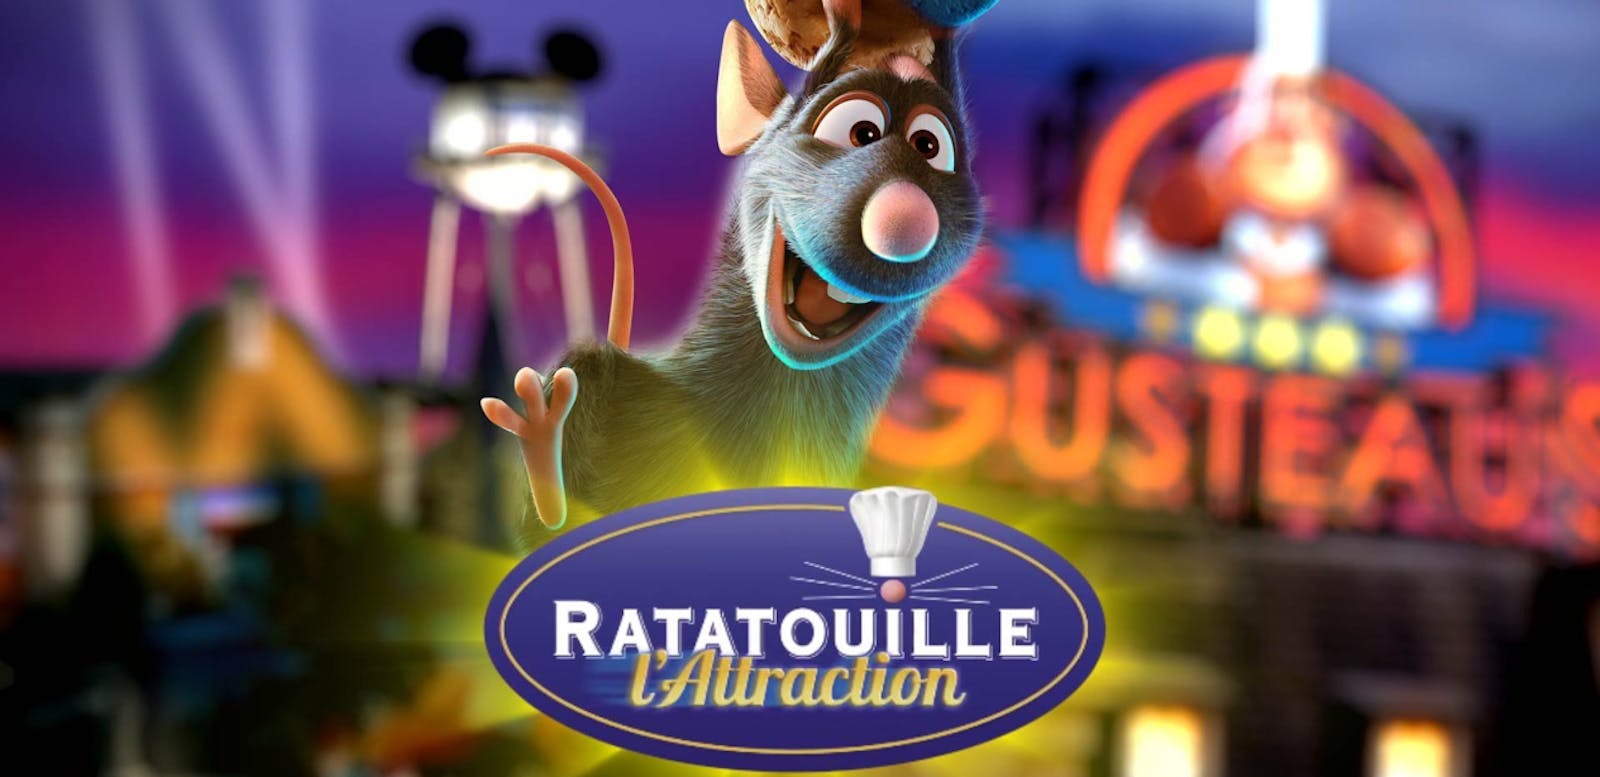 L’attraction Ratatouille ouvrira le 10 juillet 2014